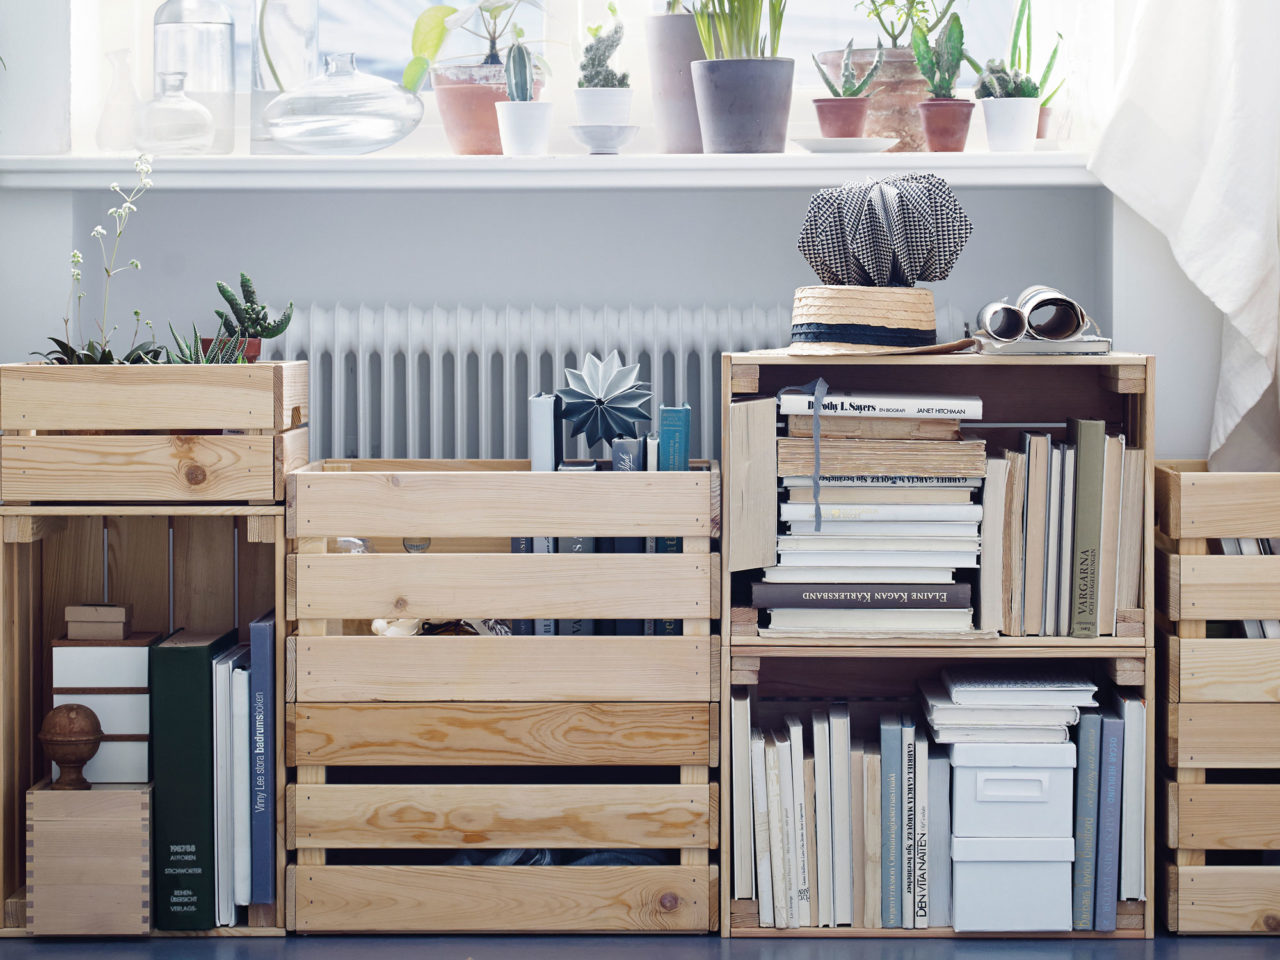 Libros y objetos llenan un mueble compuesto íntegramente por cajas de madera, modelo KNAGGLIG, apiladas en distintos niveles.